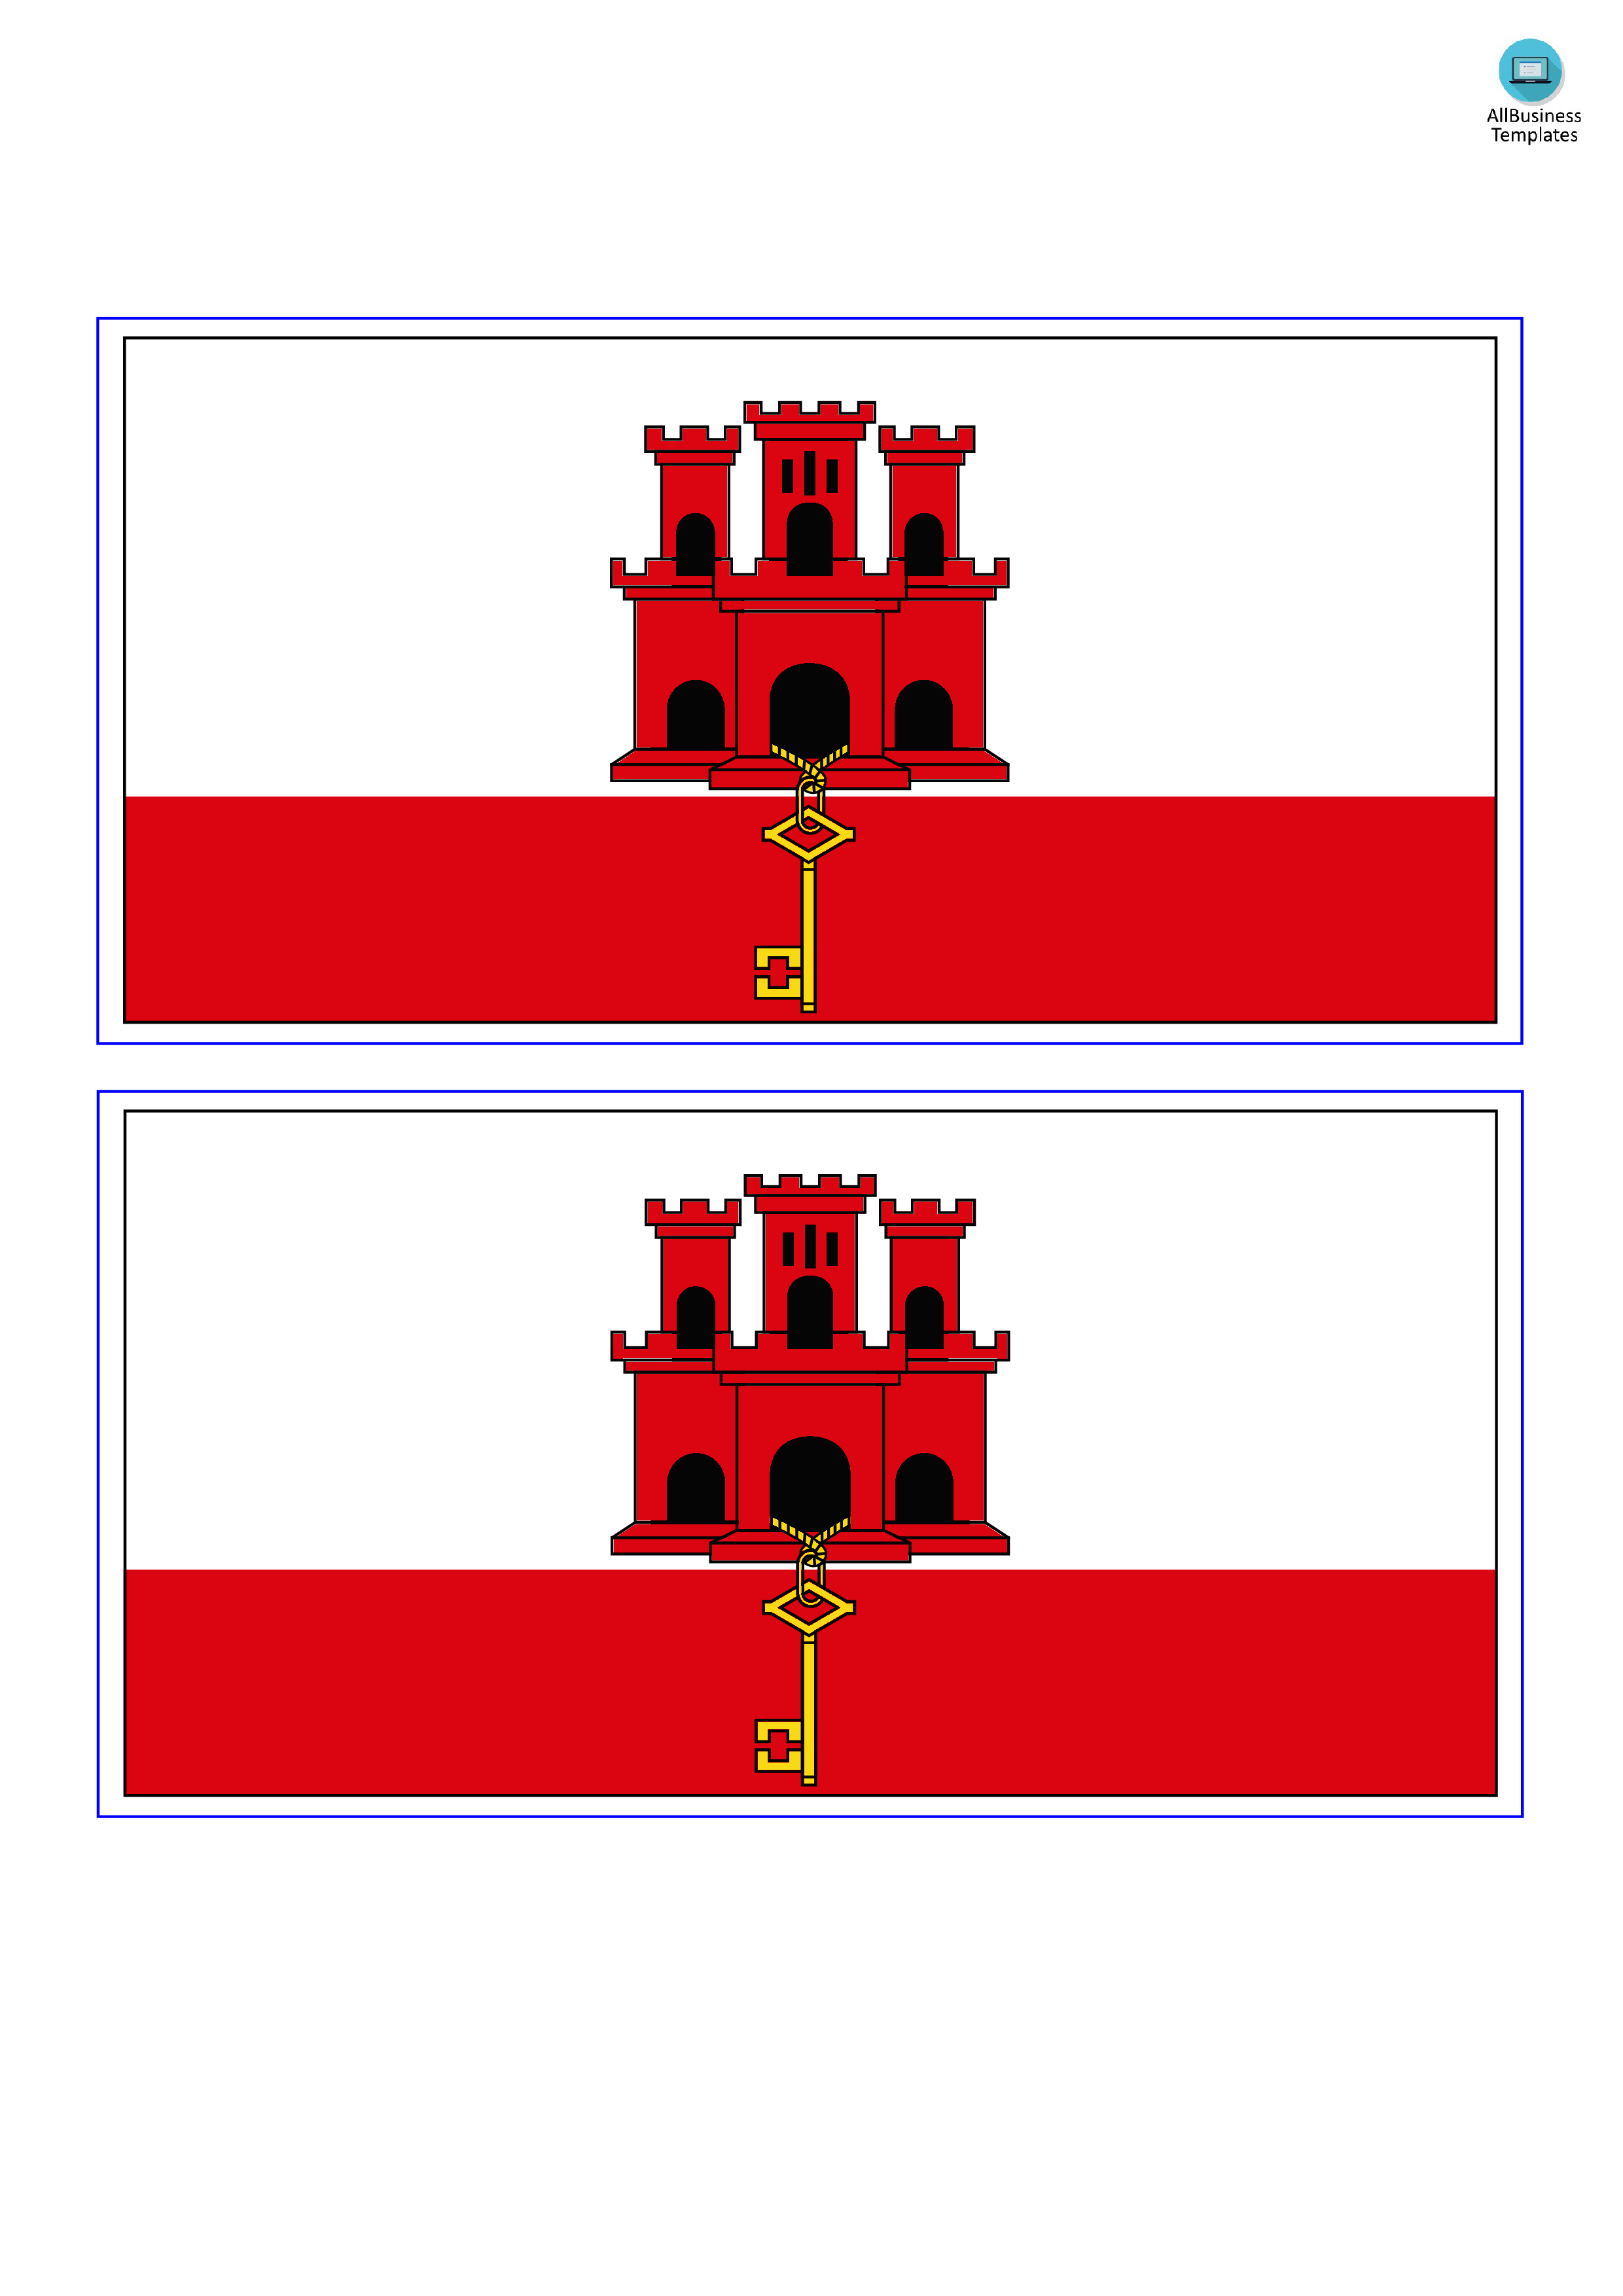 gibraltar flag plantilla imagen principal